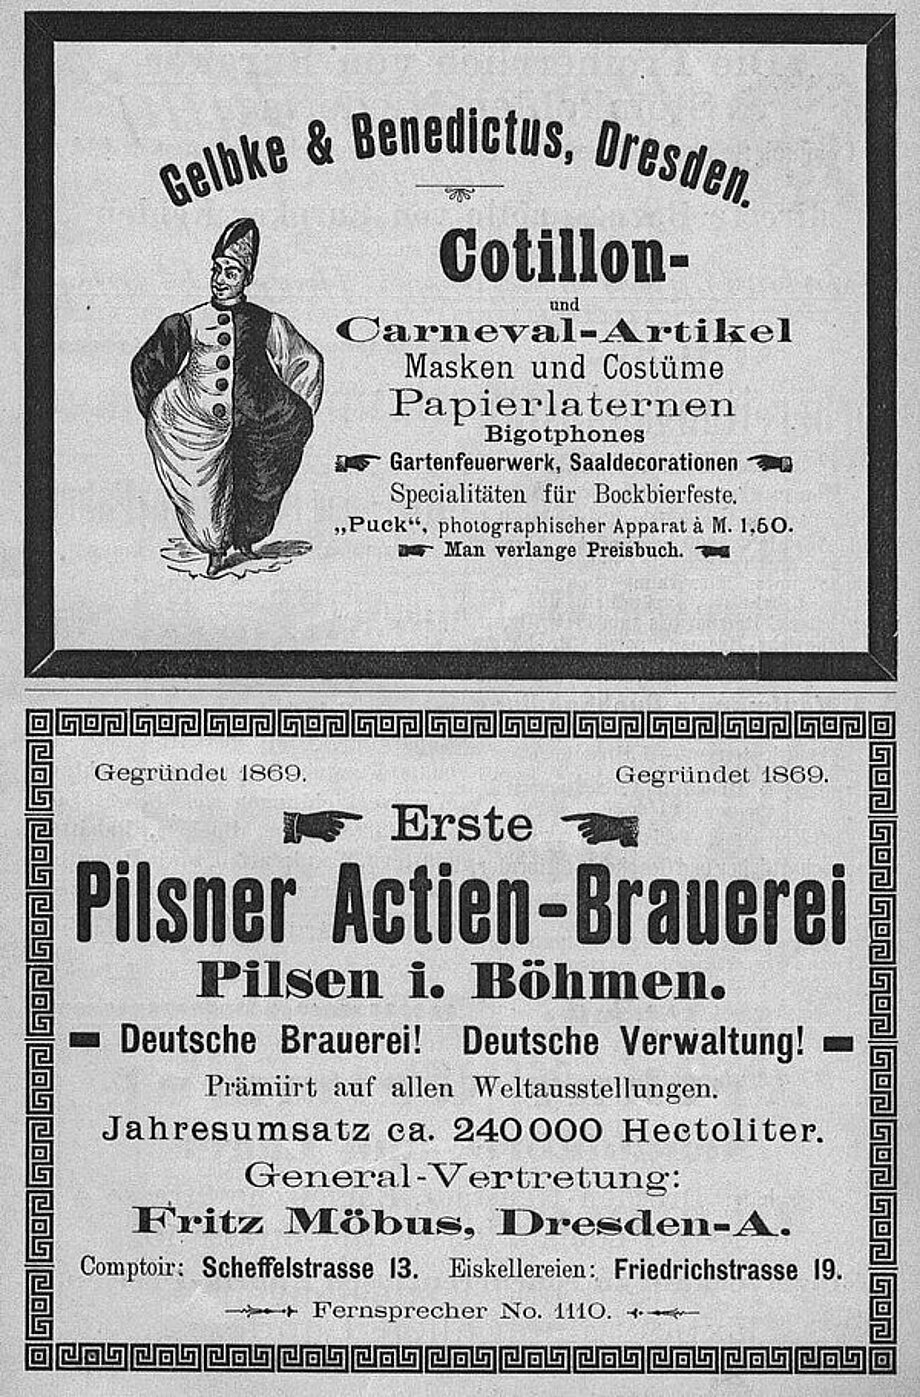 Scan einer Anzeige aus dem Dresdner Adressbuch von 1895